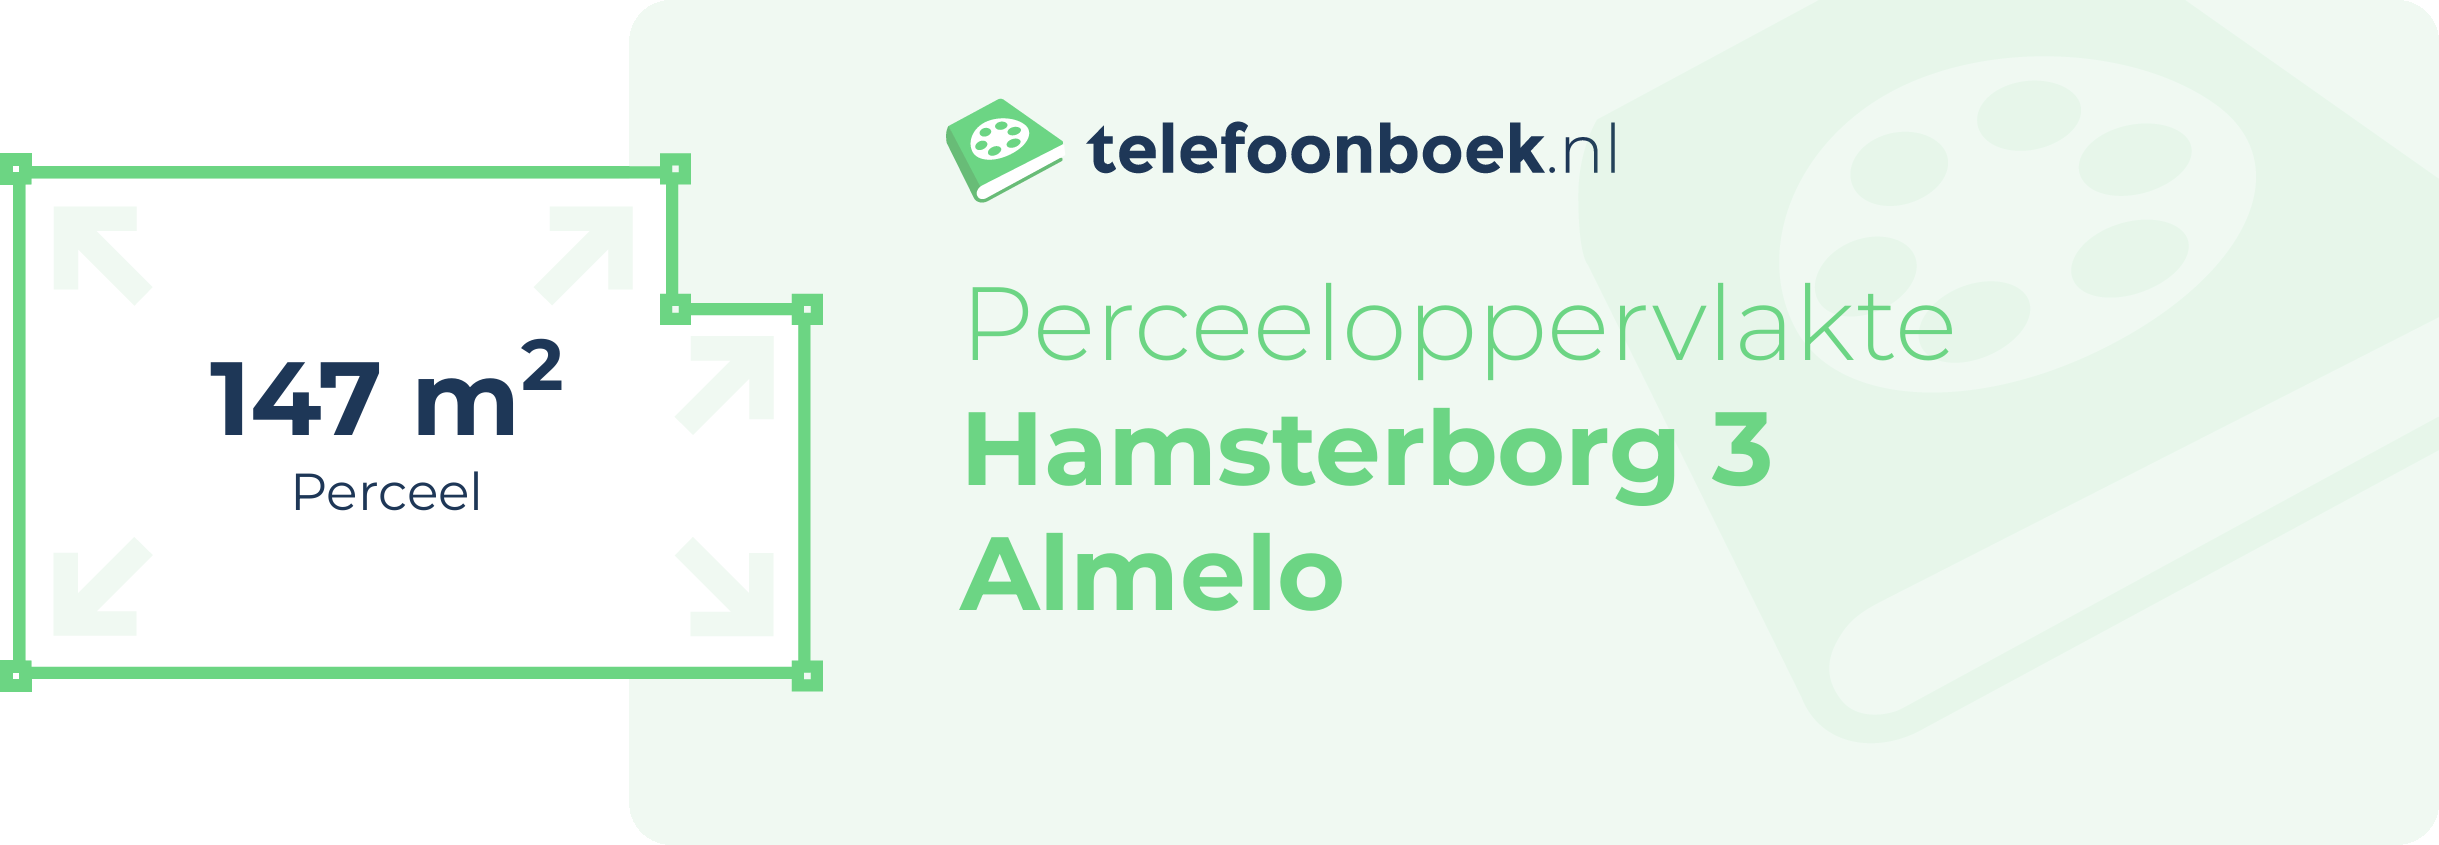 Perceeloppervlakte Hamsterborg 3 Almelo